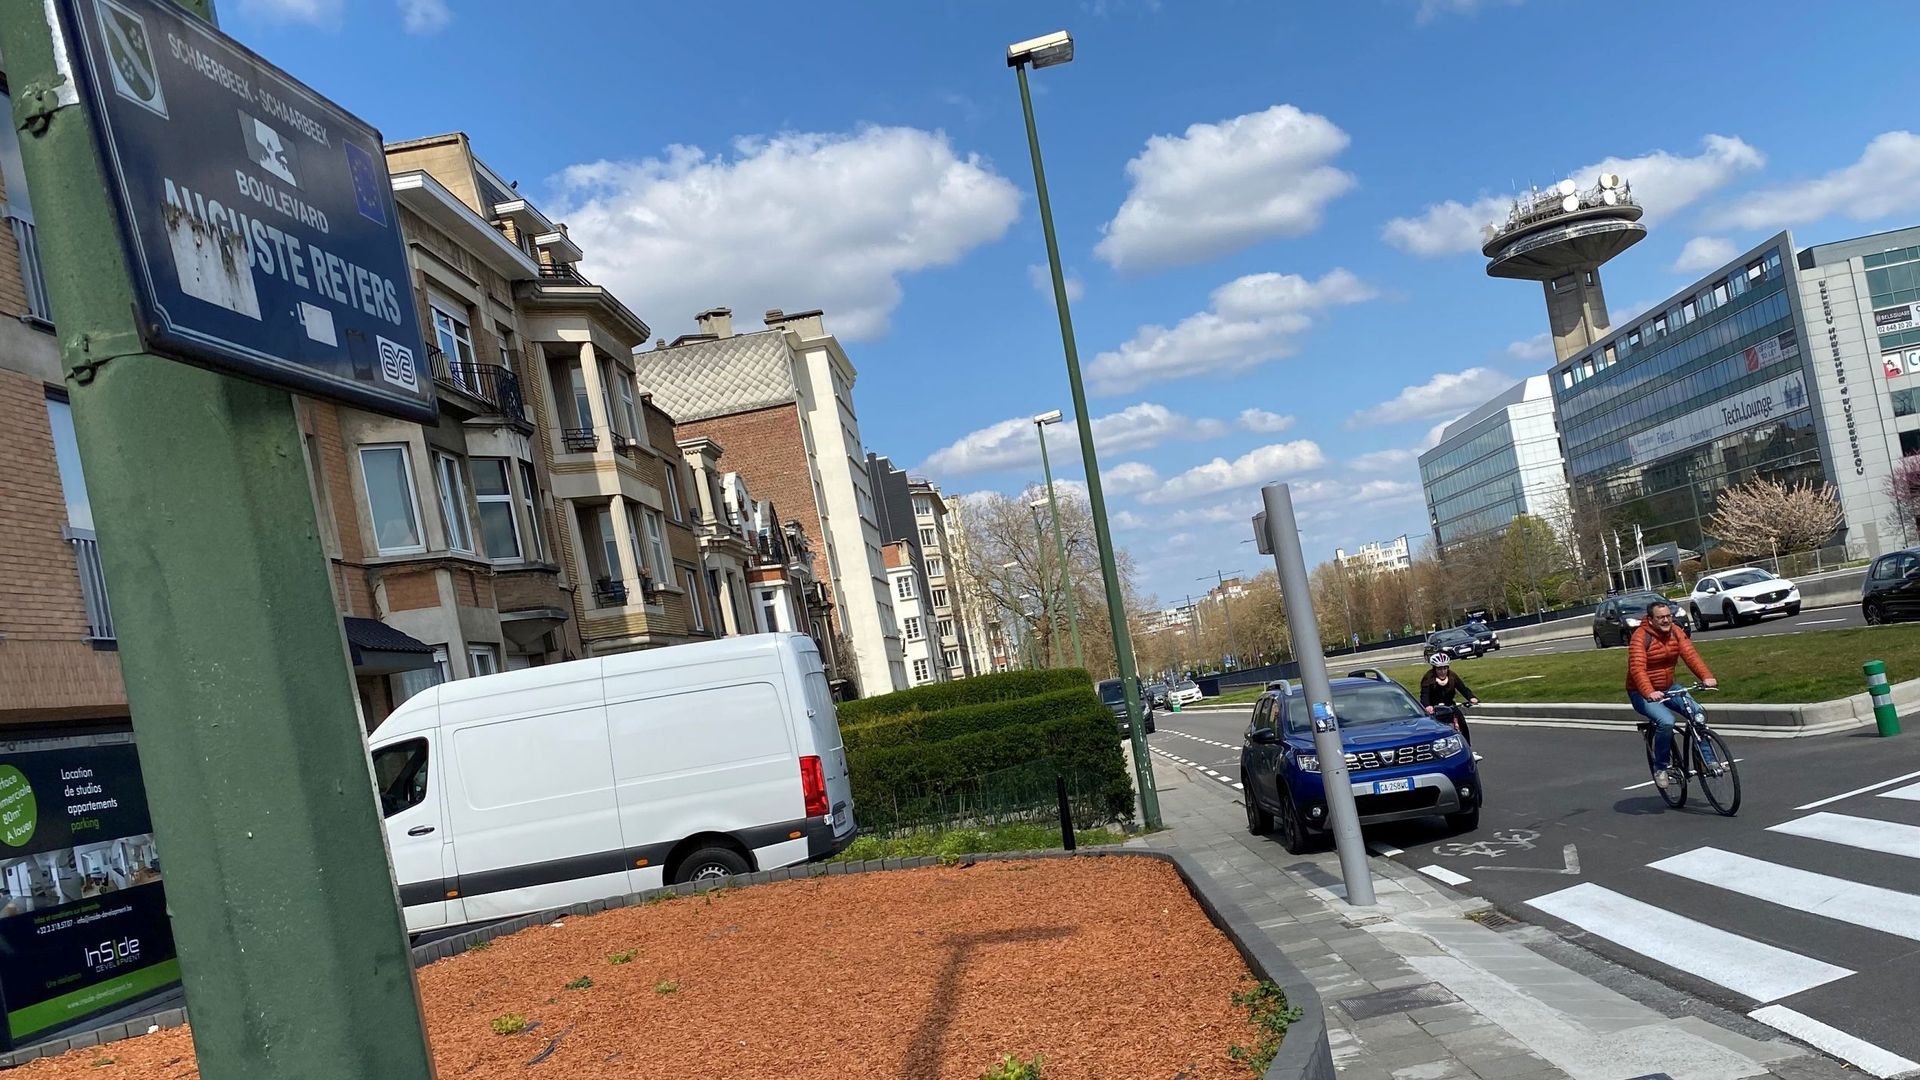 Plus de place et de sécurité pour les cyclistes et les piétons: tel est le projet pour le futur boulevard Reyers urbain.